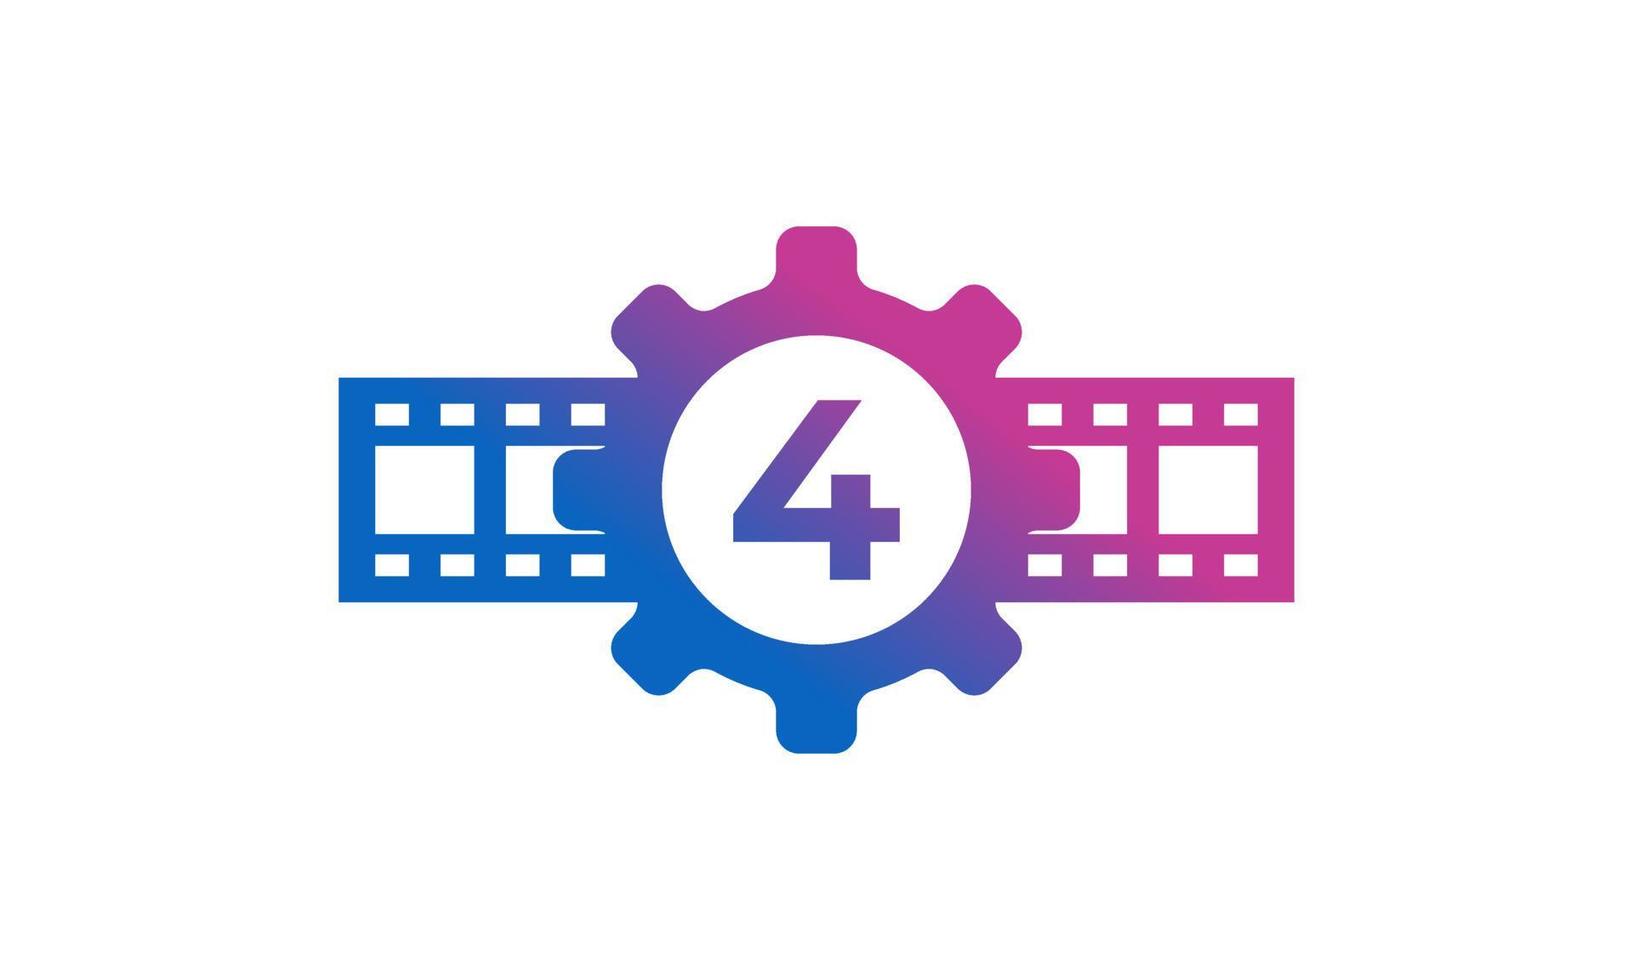 nummer 4 versnelling tandwiel met reel strepen filmstrip voor film film bioscoop productie studio logo inspiratie vector